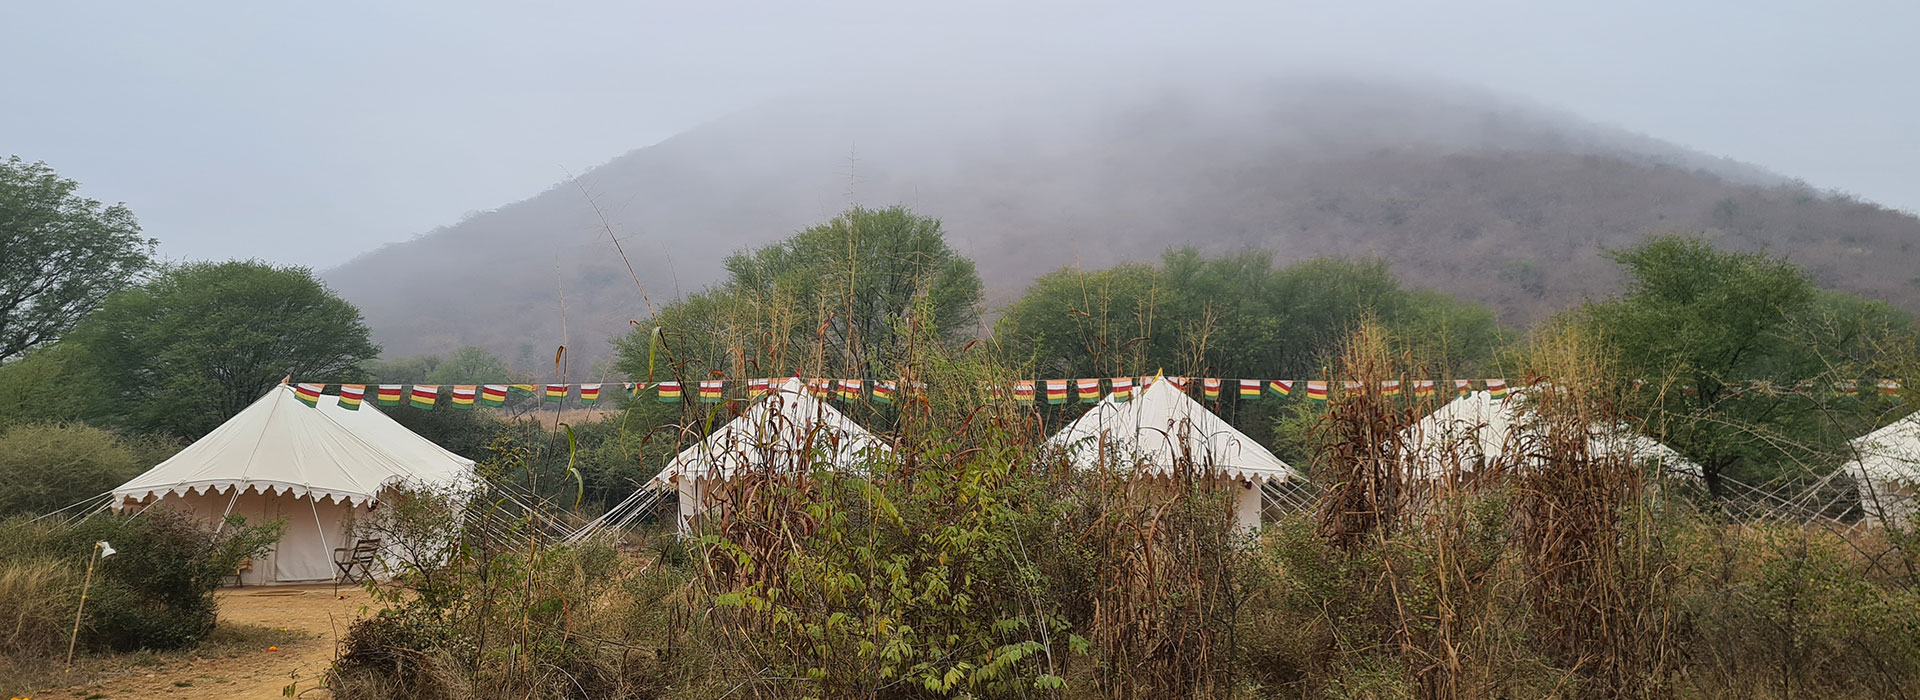 Camp Kooncha